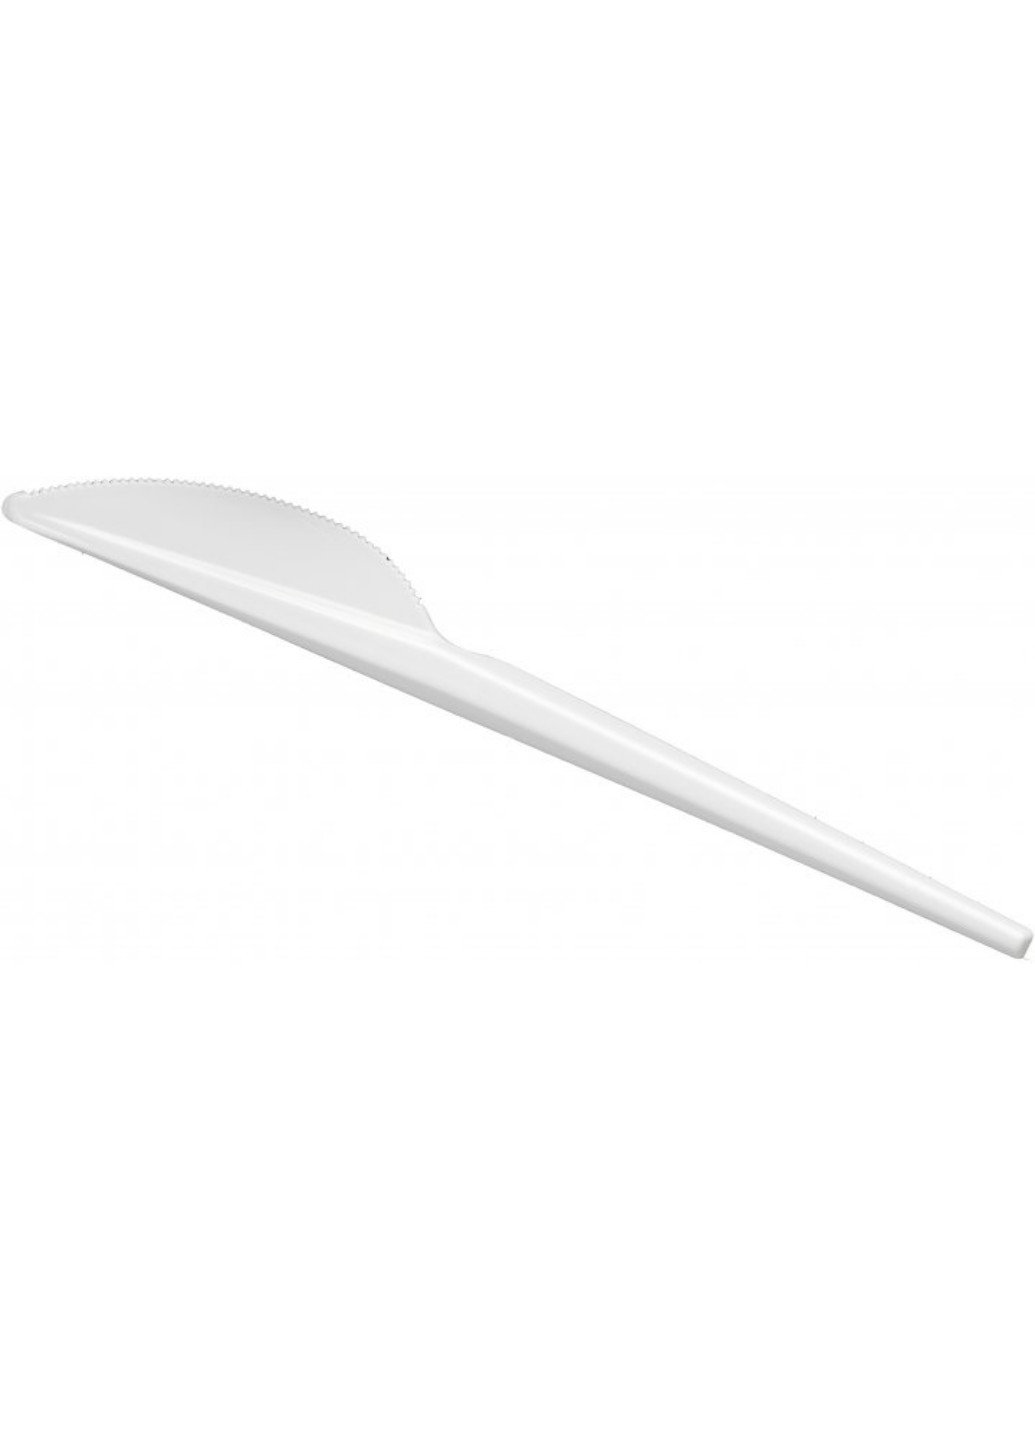 Набор одноразовых пластиковых ножей 25 шт. Lidl (257079859)